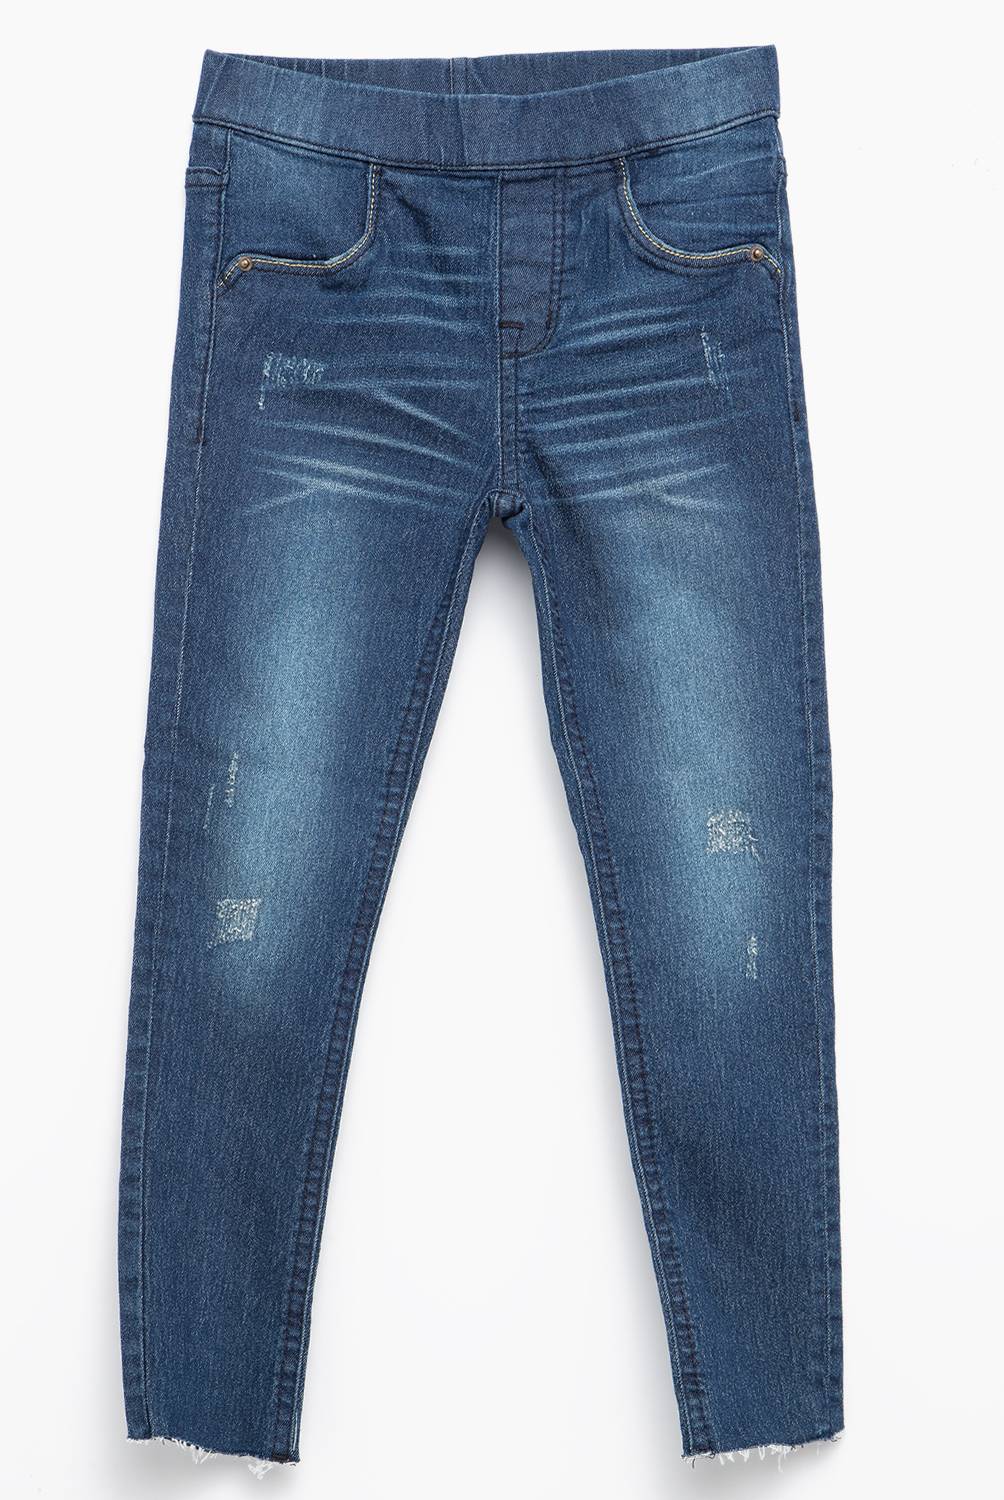 YAMP - Jeans Moda 